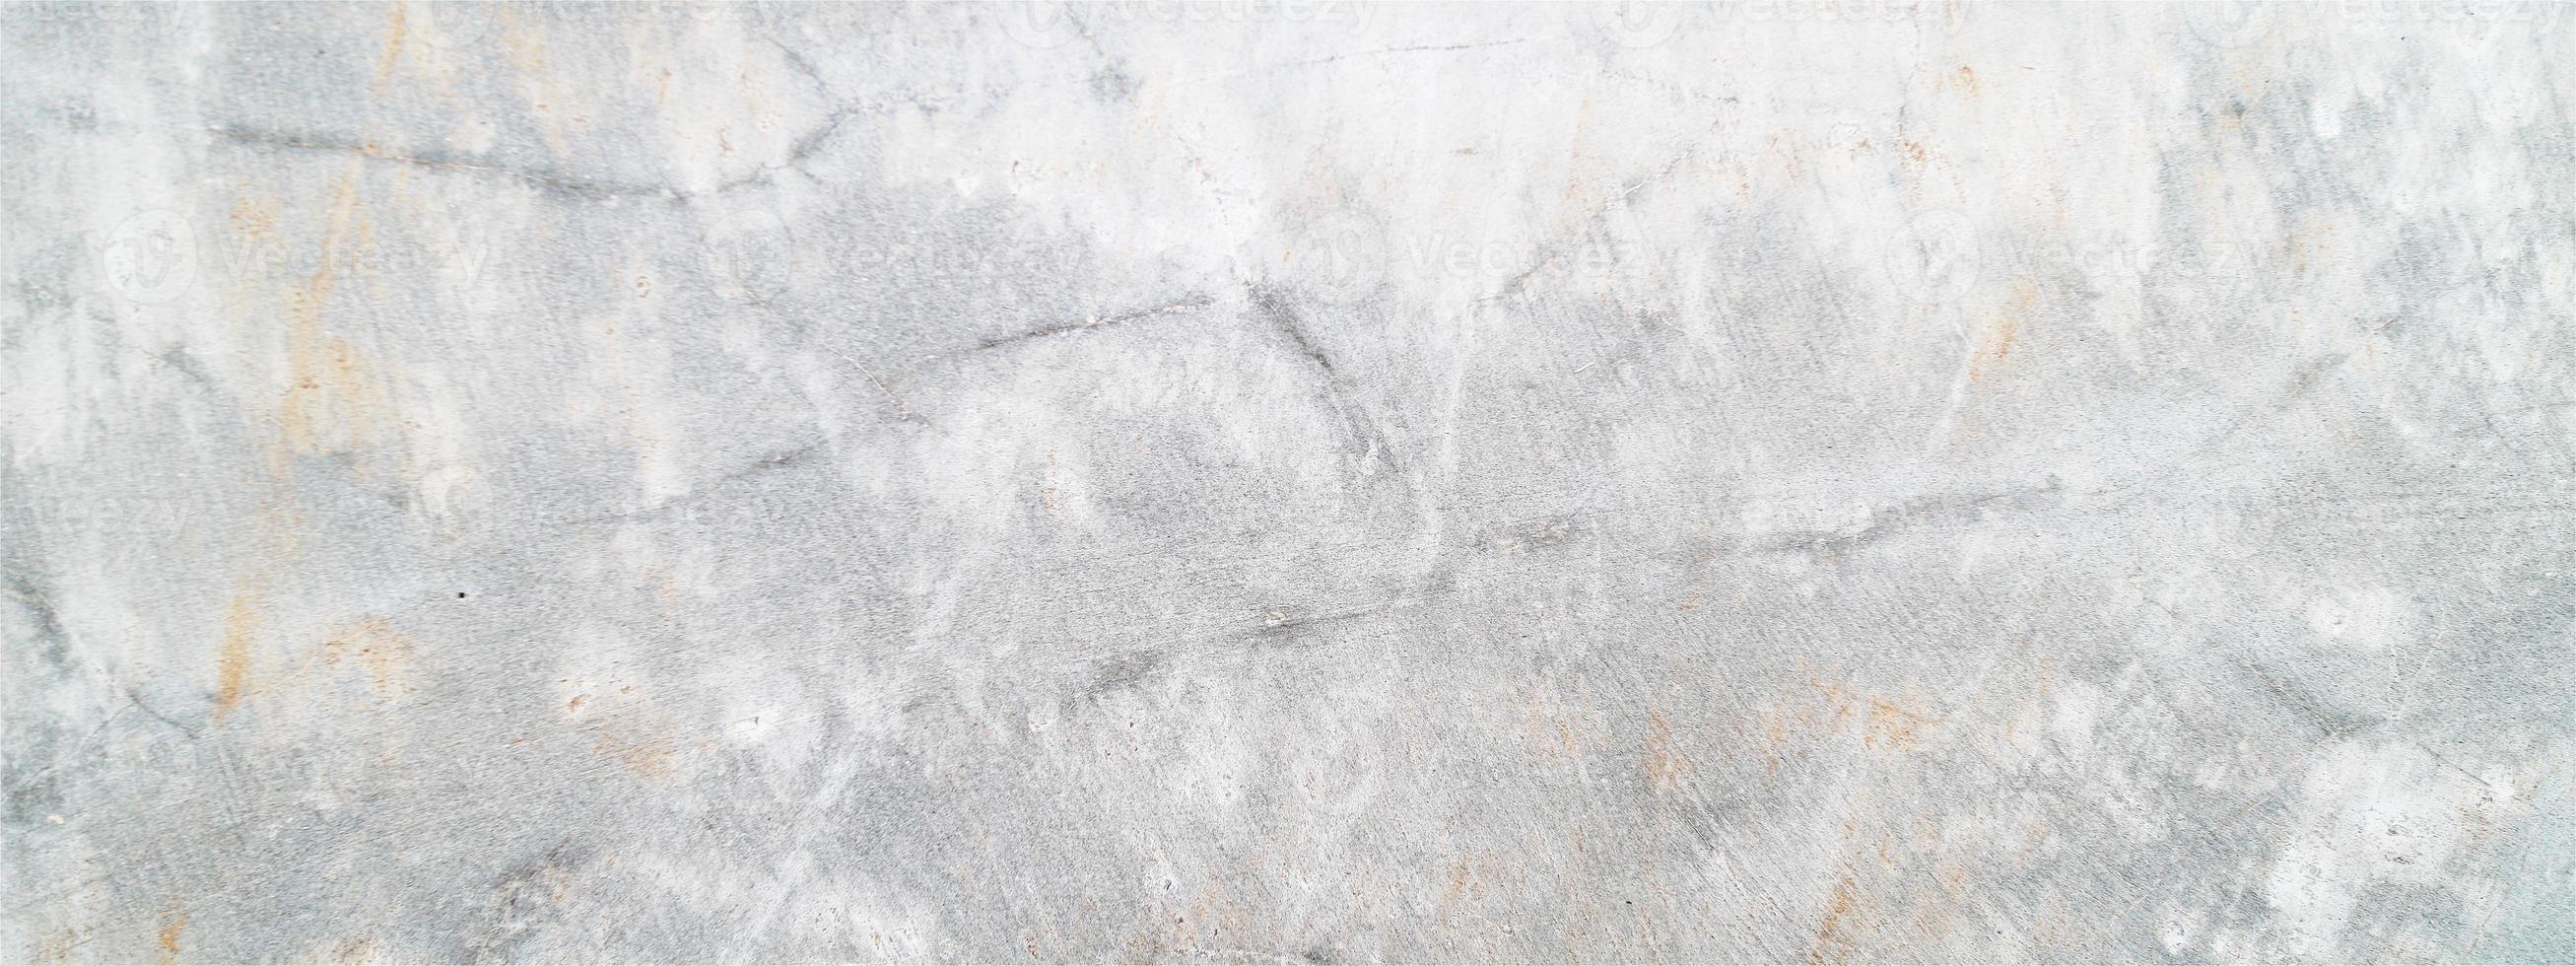 grå betong bakgrund. vit smutsig gammal cementstruktur. grunge av gammal betong foto